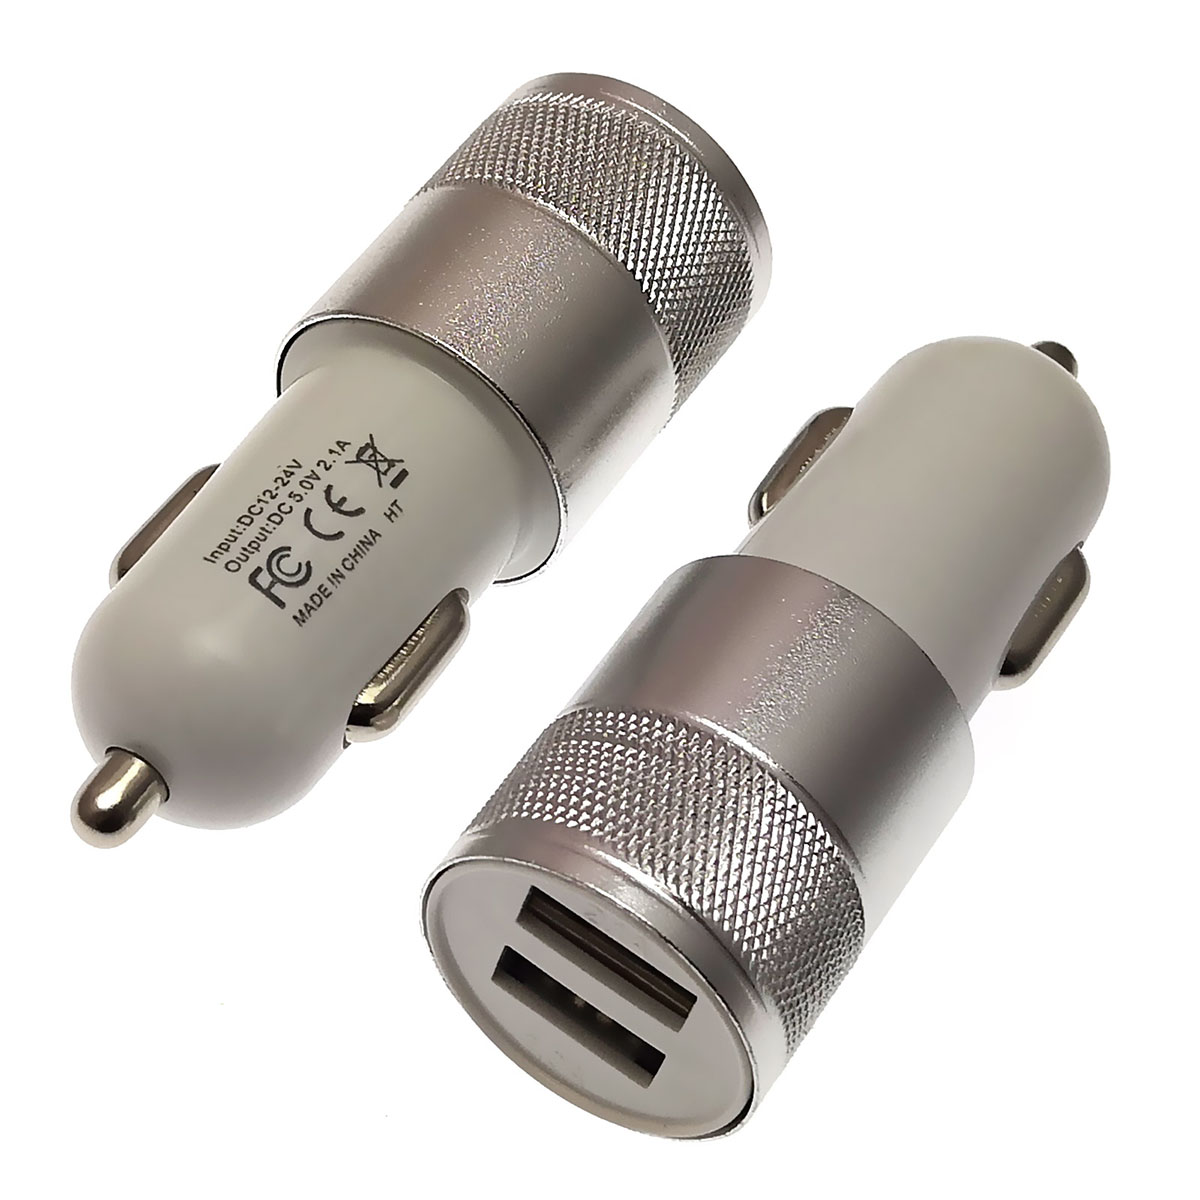 АЗУ (автомобильное зарядное устройство) 12/24V на 2 USB выхода 5V-1/2.1A, цвет серебристо-белый.